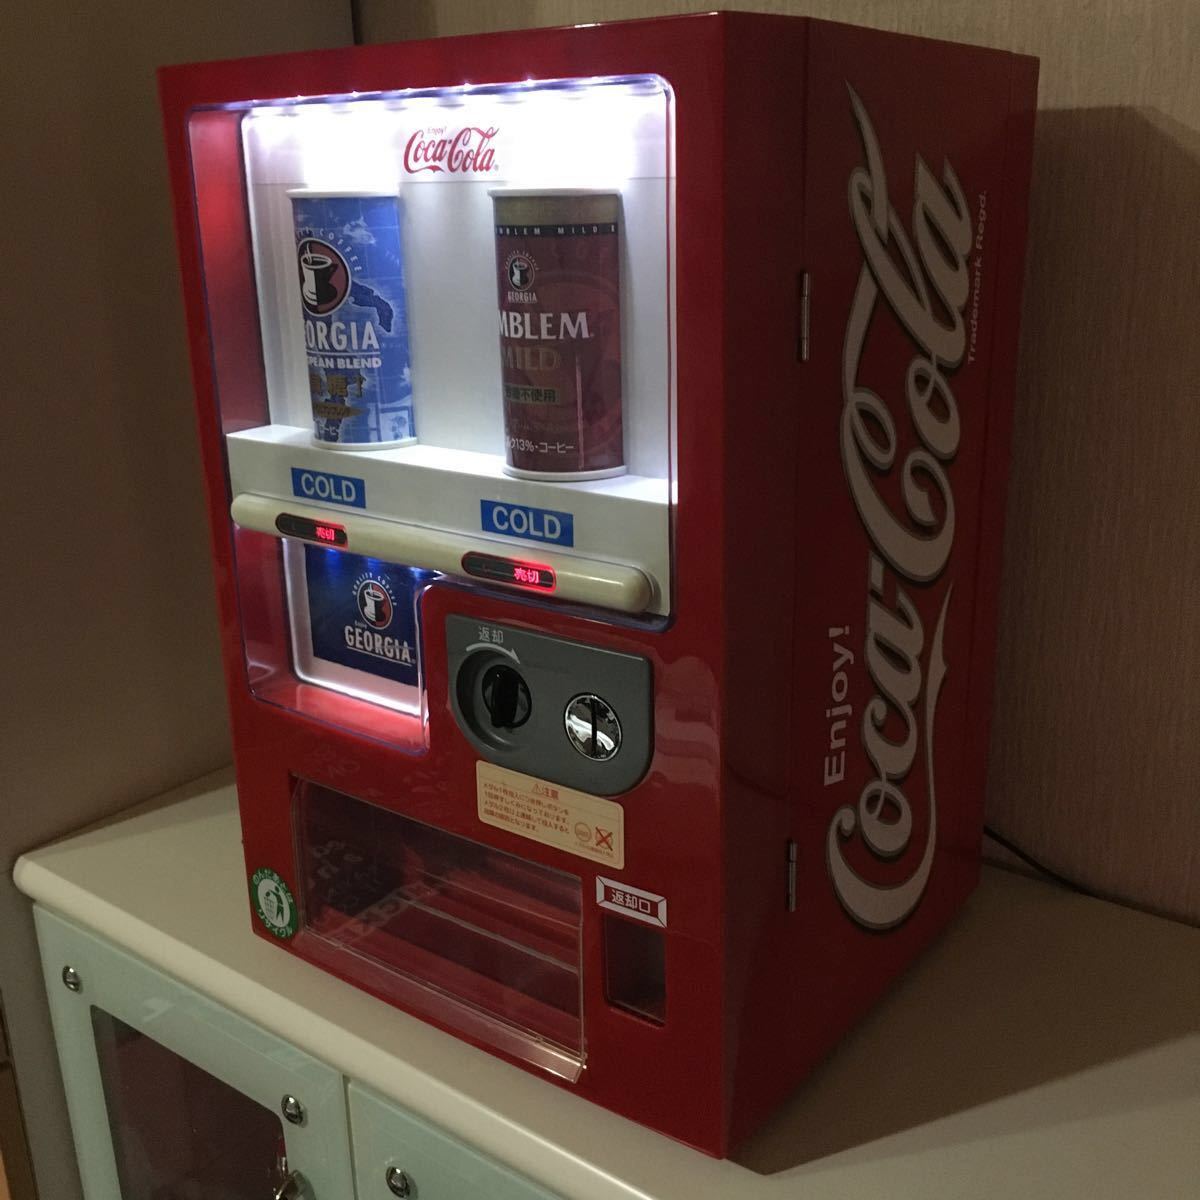 ◆希少セブンイレブン限定コカコーラ自動販売機型冷蔵庫:保冷庫ジョージア◆